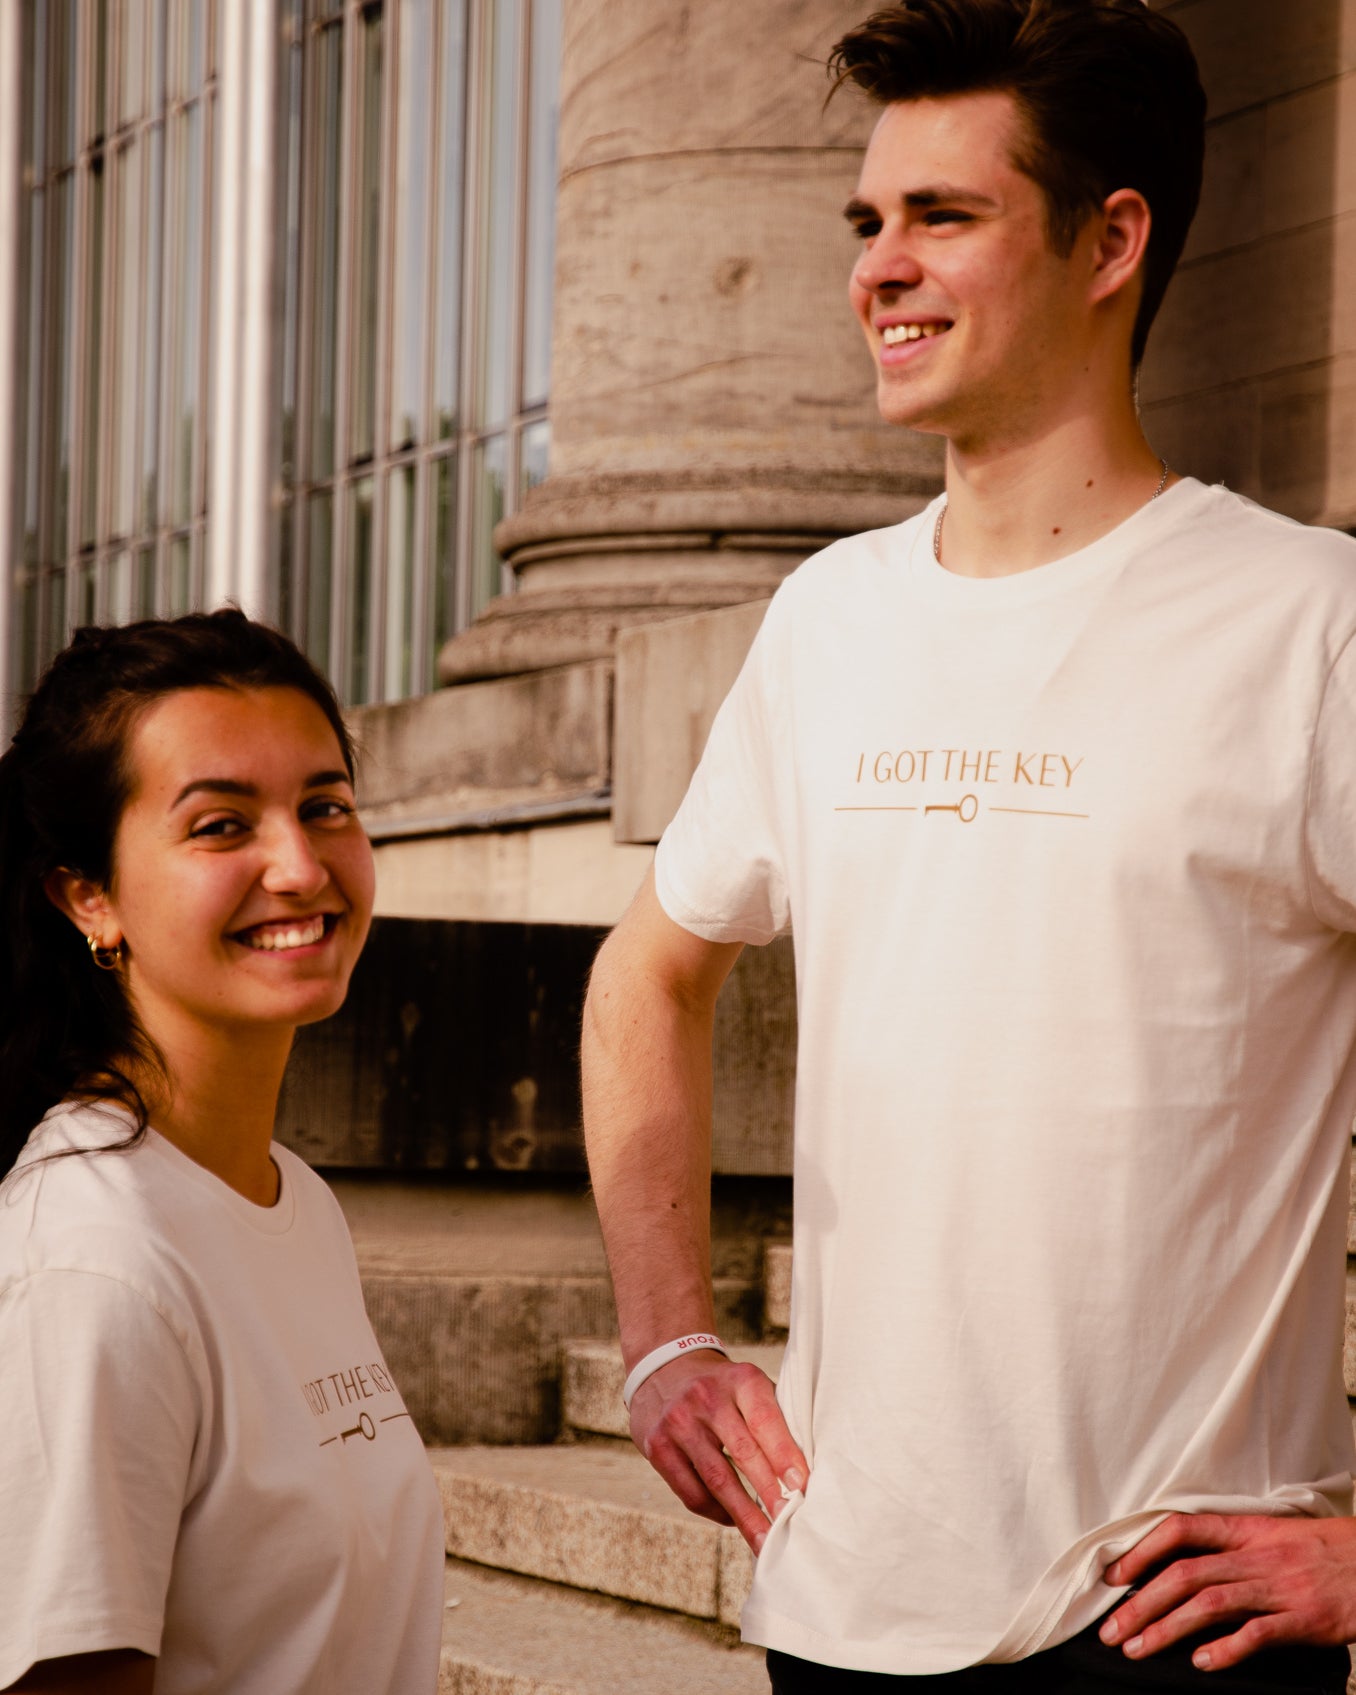 Frau und Mann tragen beide ein cremeweißes T-Shirt mit goldenem I GOT THE KEY Druck